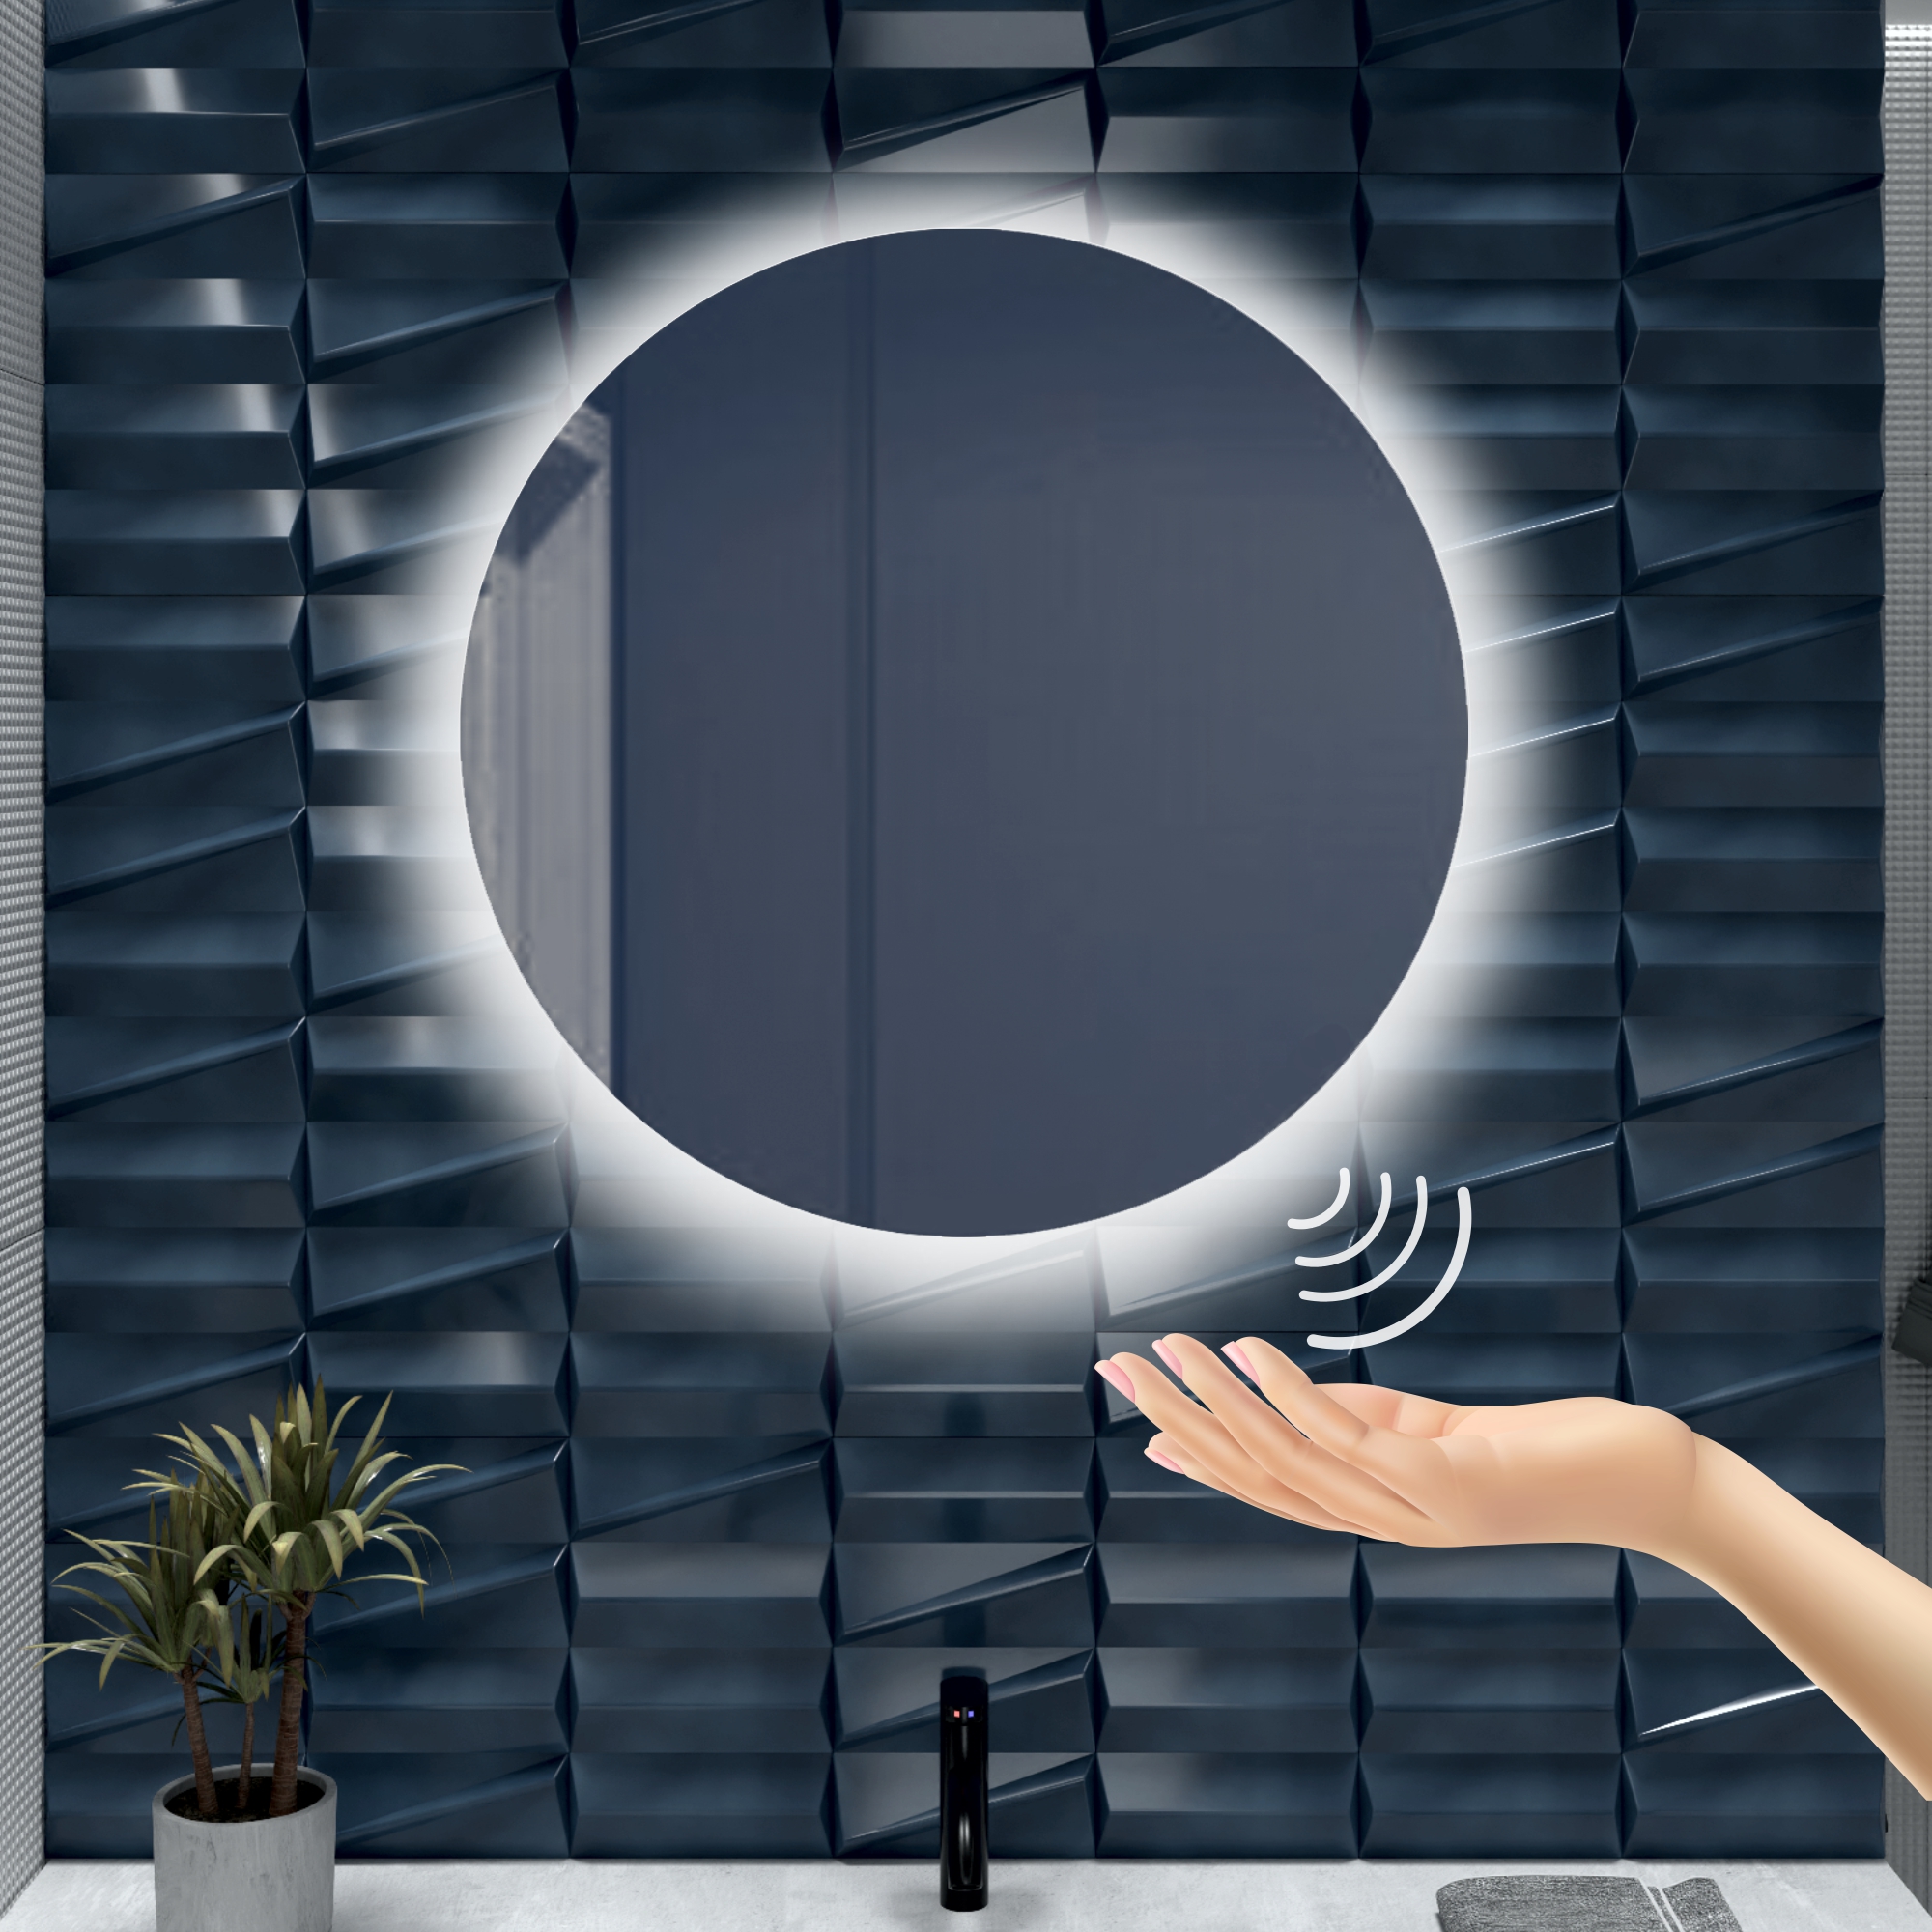 Зеркало для ванной Alfa Mirrors с холодной подсветкой 6500К круглое 90см, арт. Na-9Vzd зеркало с подсветкой настенное круглое silver mirrors fantom 77 см с bluetooth